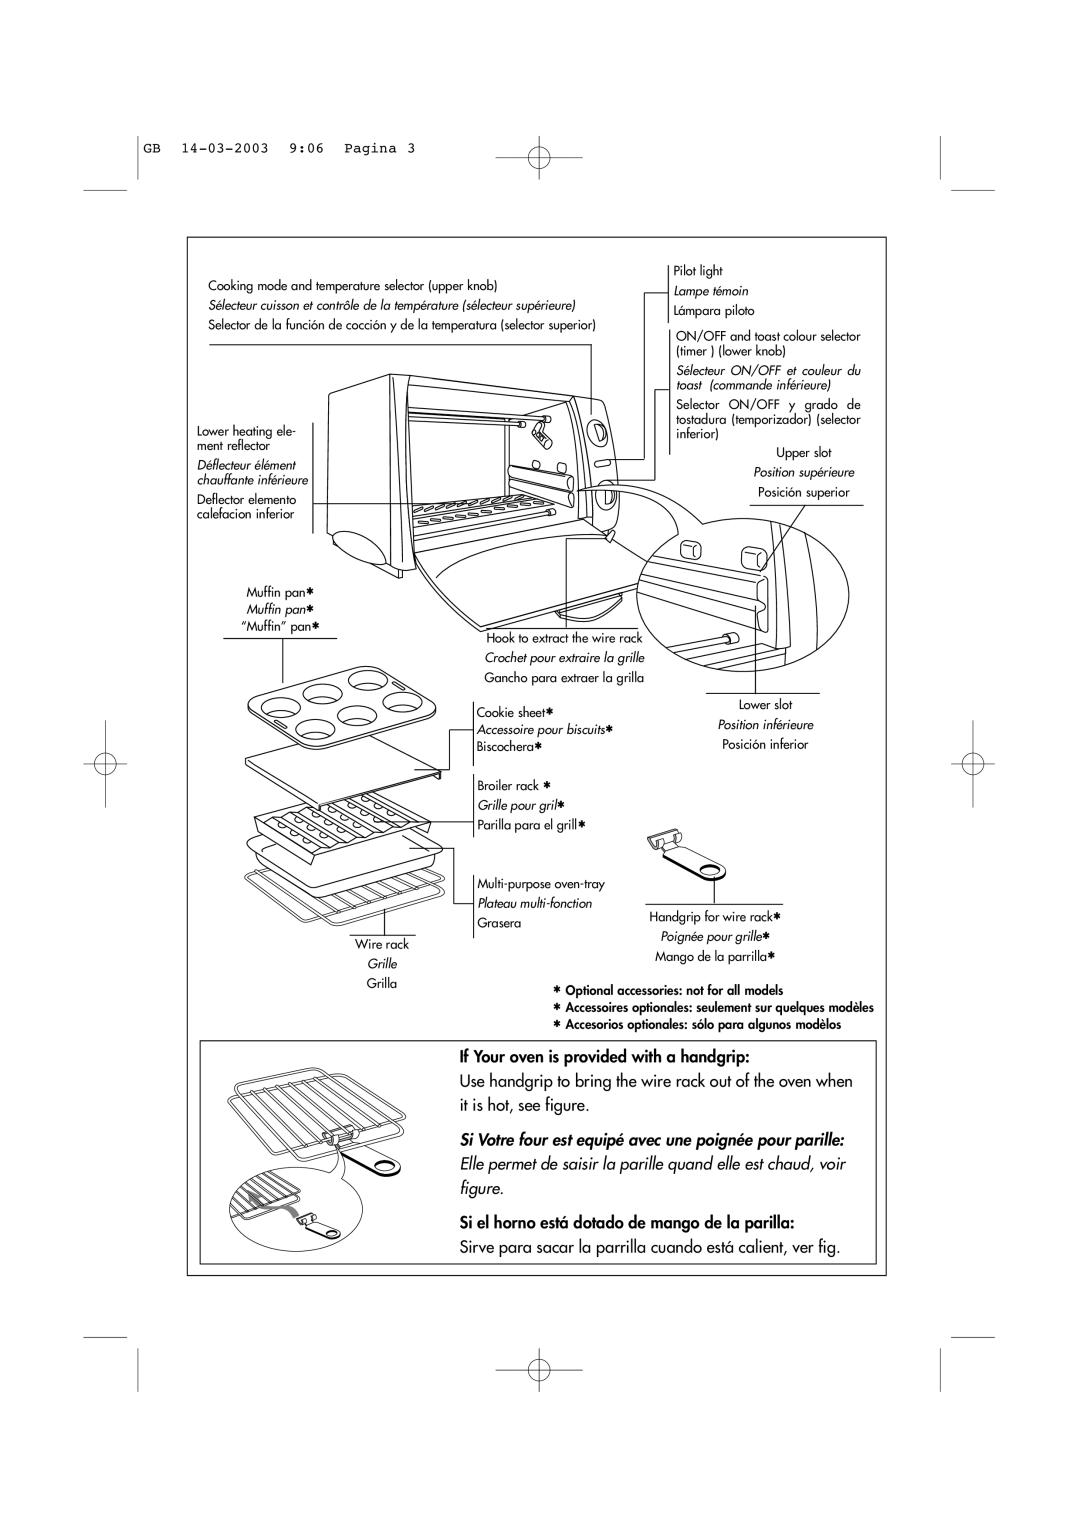 DeLonghi Toaster-Oven-Broiler GB 14-03-20039 06 Pagina, Déflecteur élément chauffante inférieure, Accessoire pour biscuits 